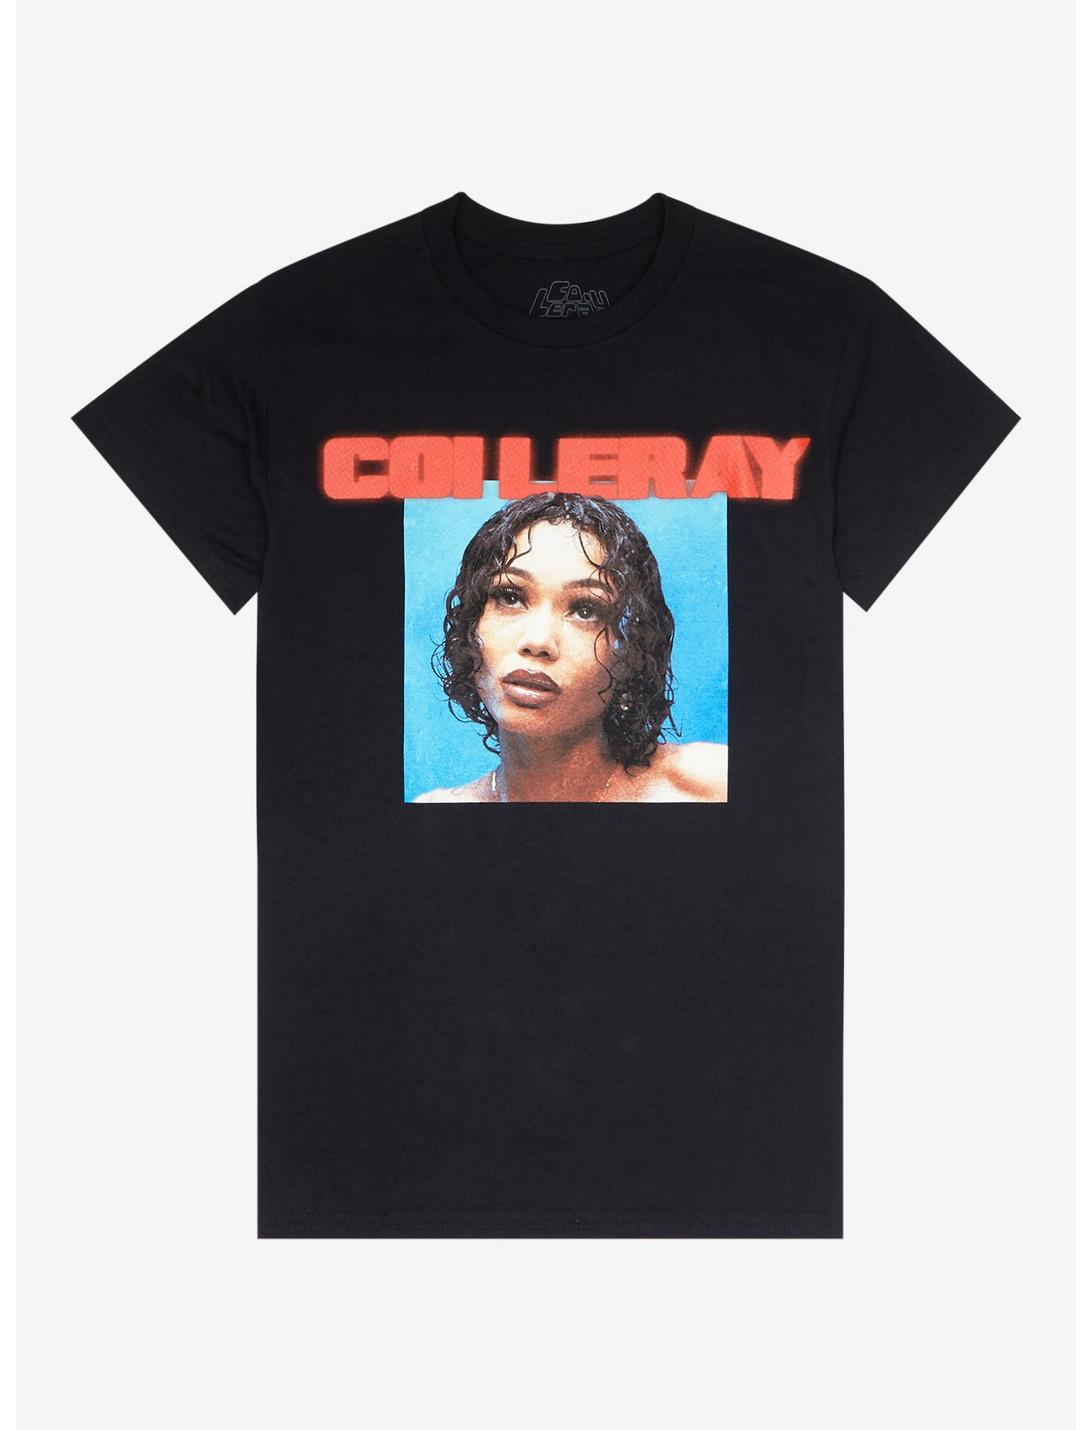 Coi Leray Portrait Boyfriend Fit Girls T-Shirt, BLACK, hi-res